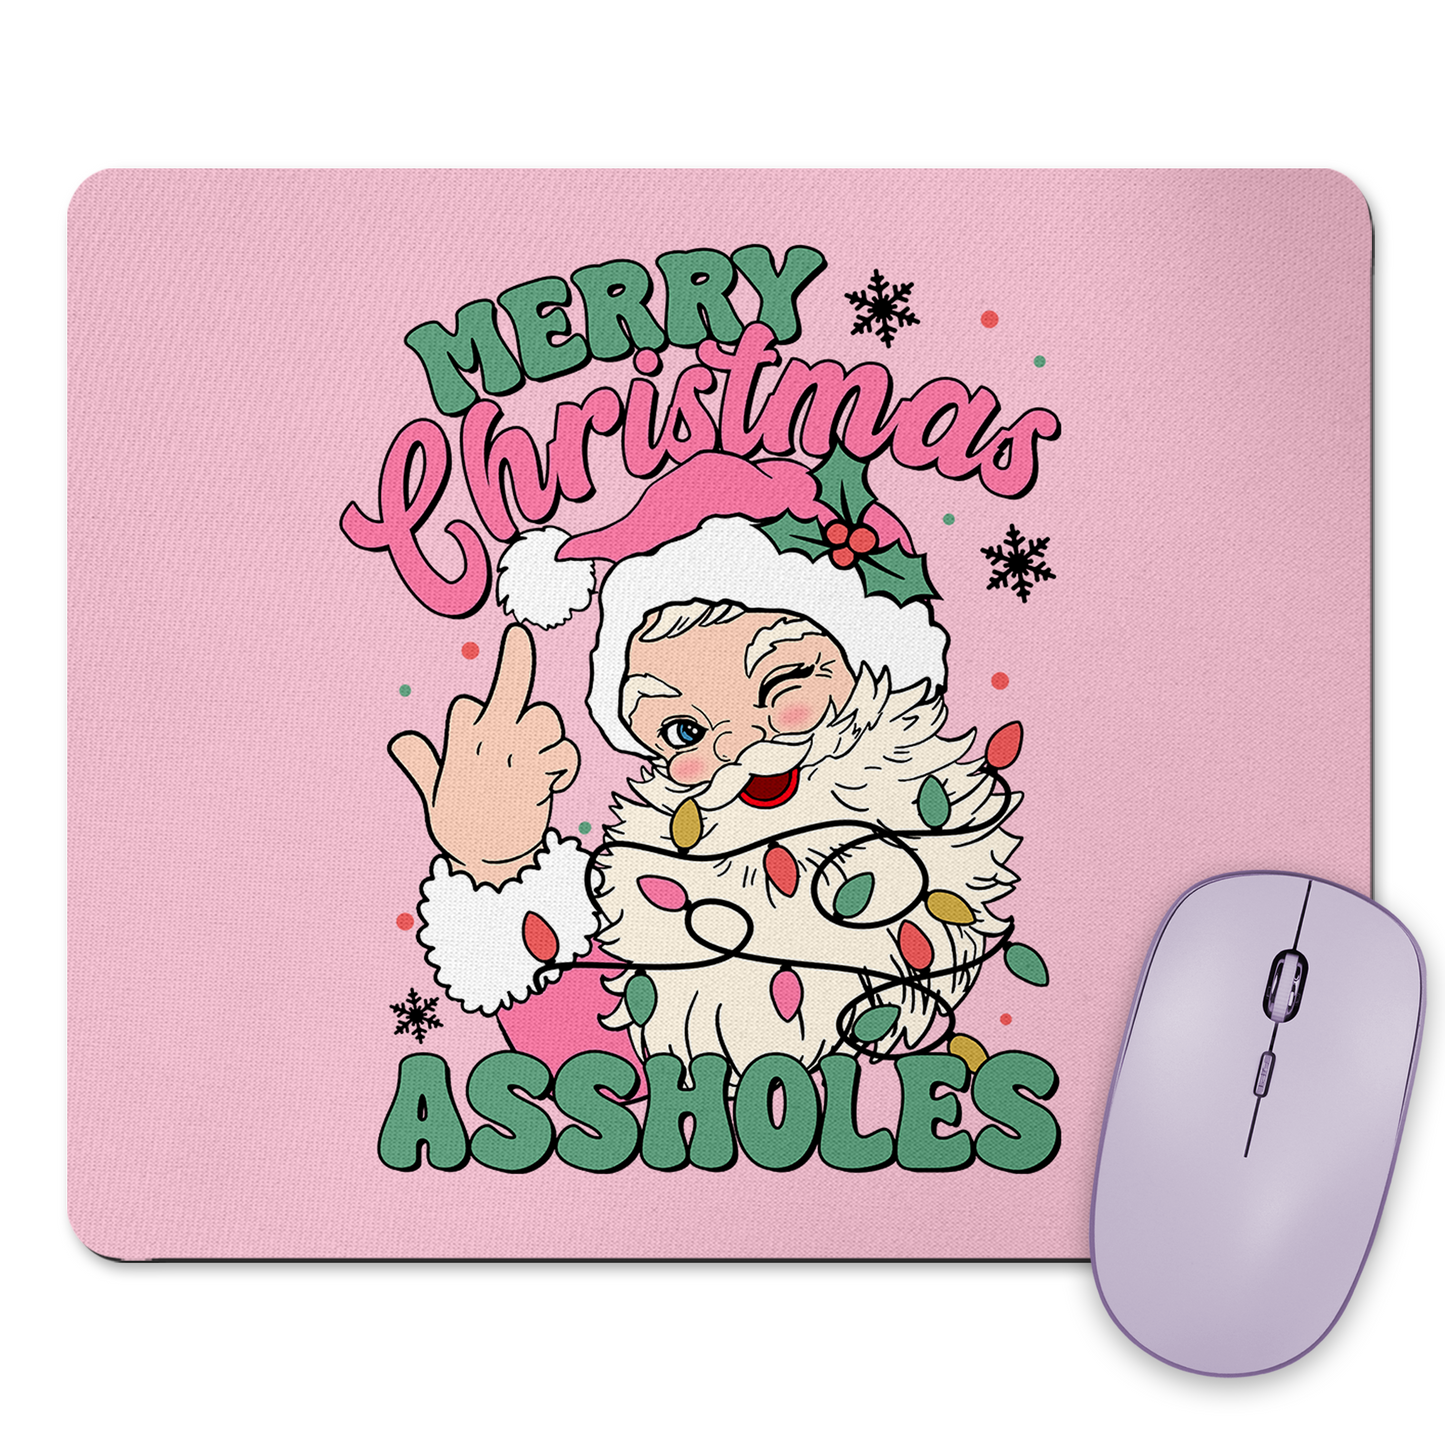 Merry Christmas Assholes Mousepad & Coaster Set